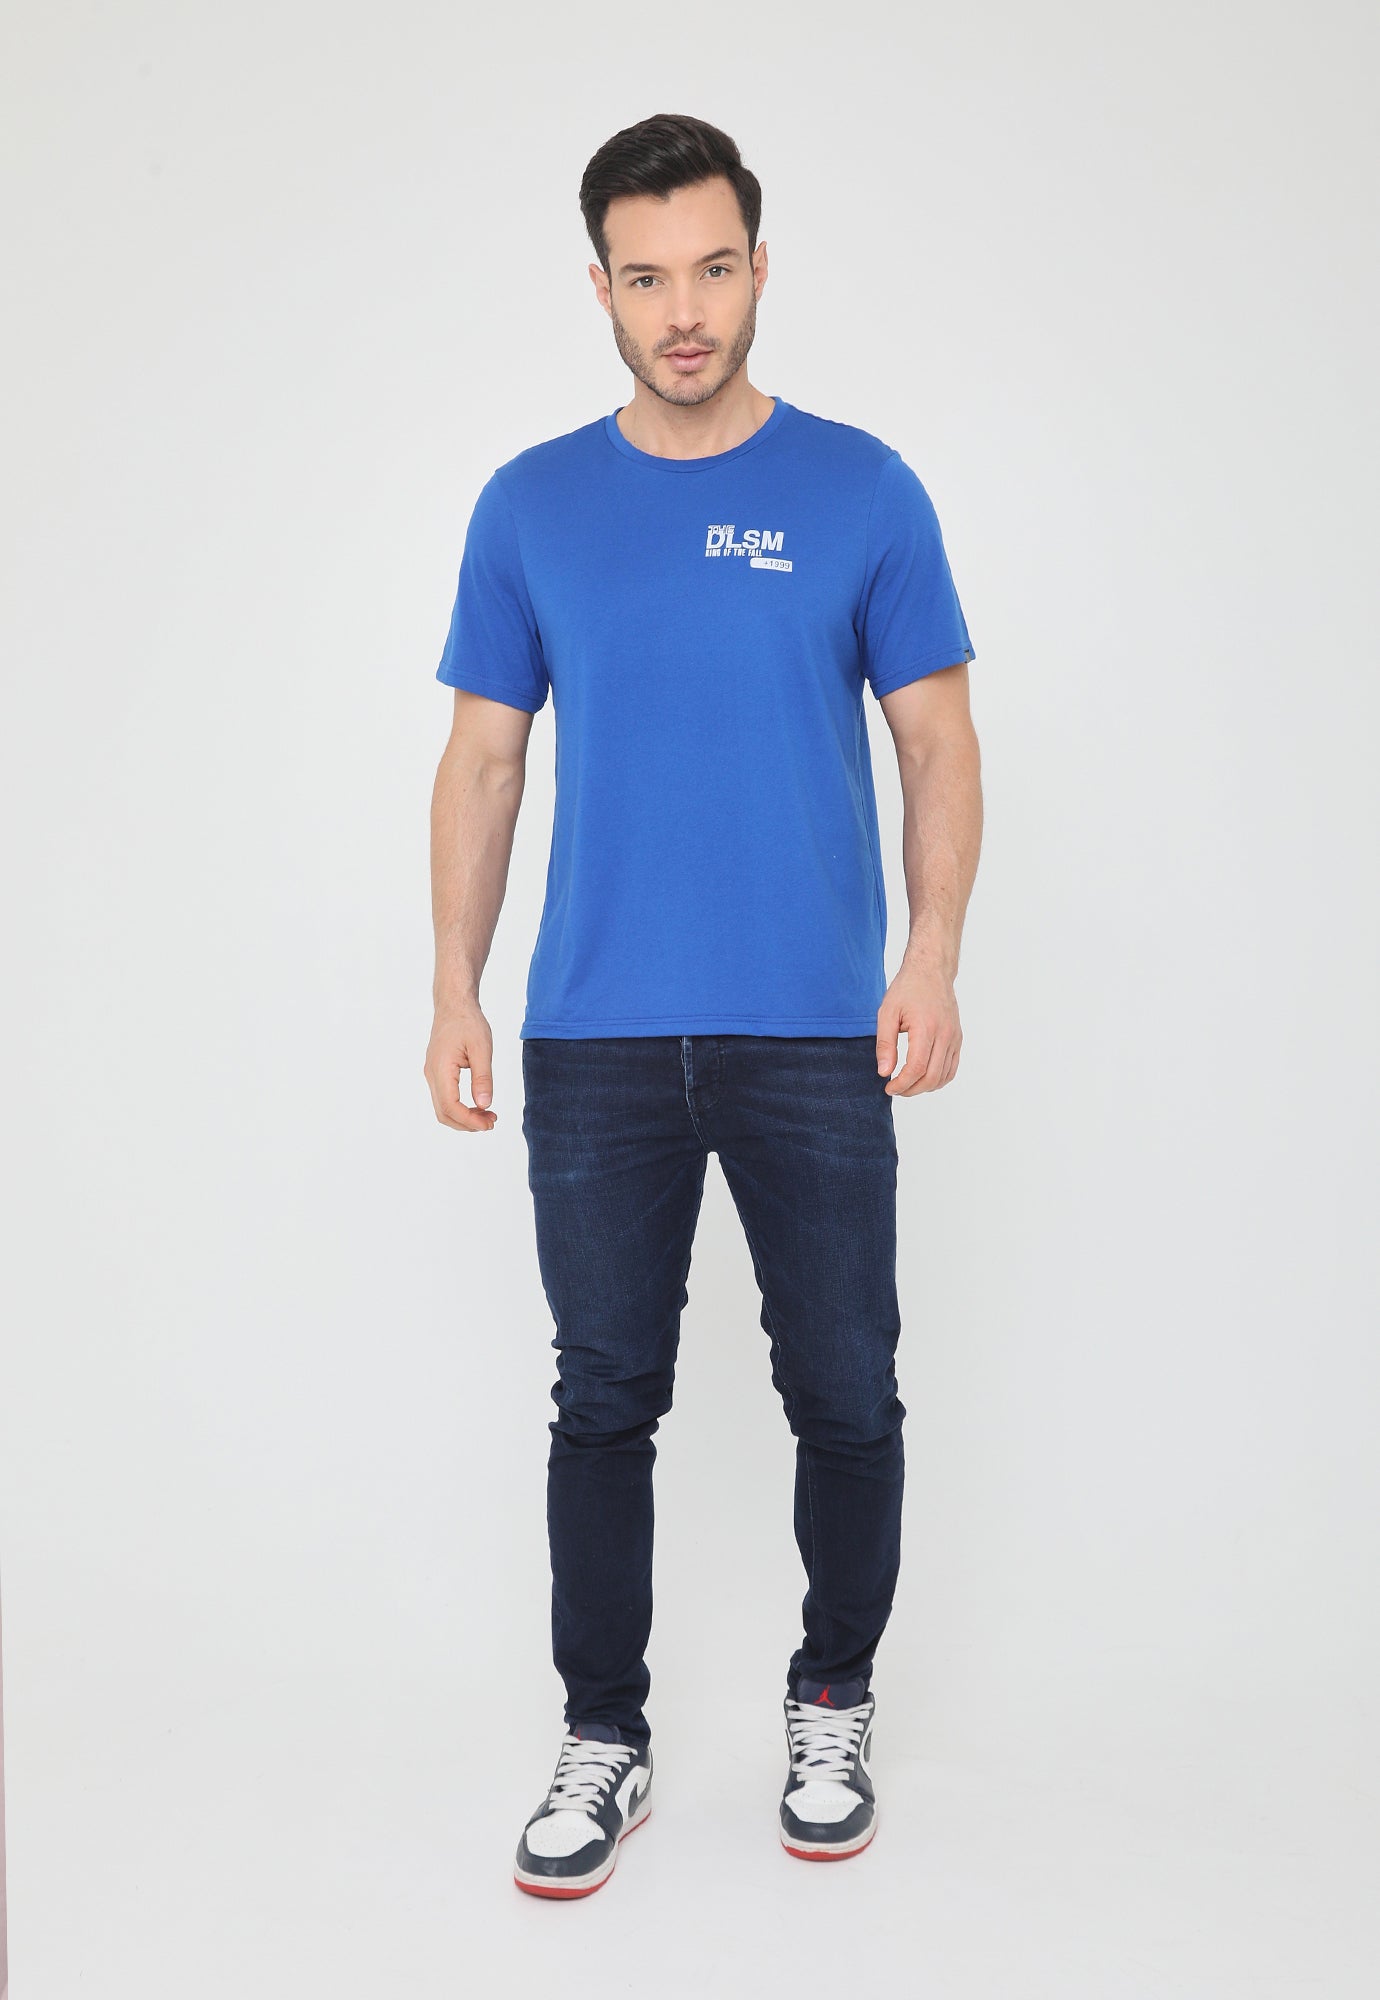 Camiseta azul rey manga corta, estampado pequeño en frente y en posterior para hombre